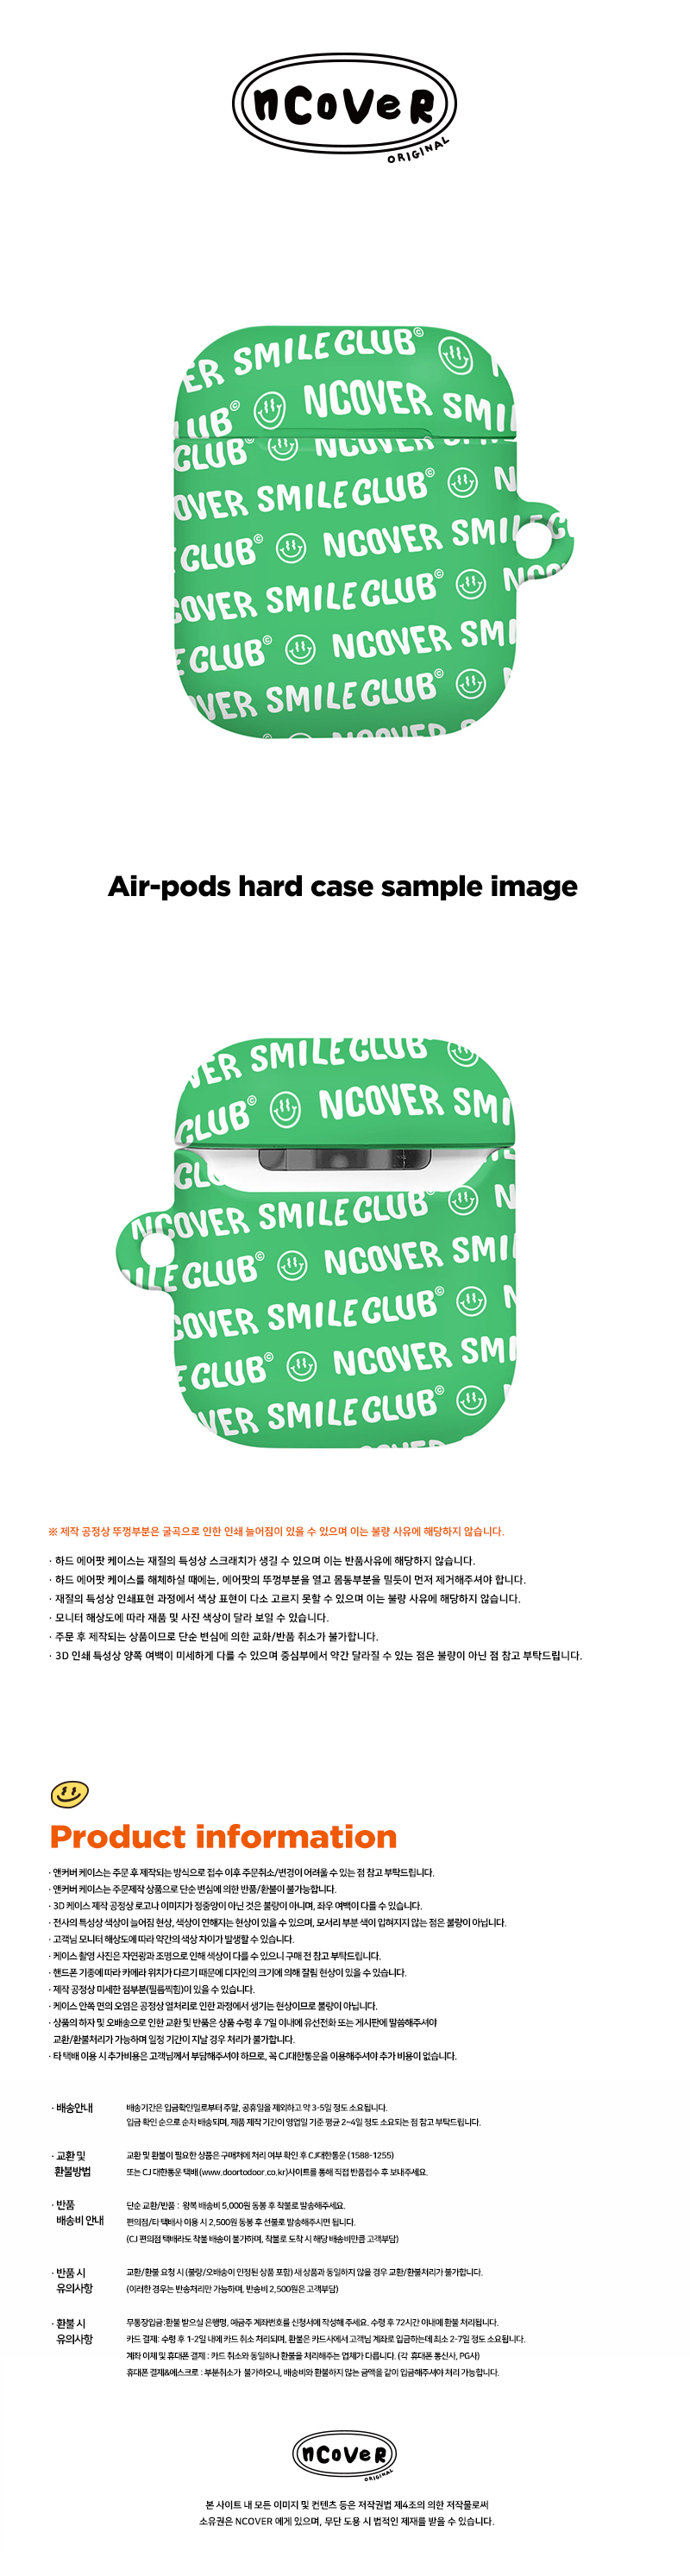 [호환용] Smile club(emoticon)-green(airpods hard)  18,000원 - 바이인터내셔널주식회사 디지털, 이어폰/헤드폰, 이어폰/헤드폰 액세서리, 에어팟/에어팟프로 케이스 바보사랑 [호환용] Smile club(emoticon)-green(airpods hard)  18,000원 - 바이인터내셔널주식회사 디지털, 이어폰/헤드폰, 이어폰/헤드폰 액세서리, 에어팟/에어팟프로 케이스 바보사랑